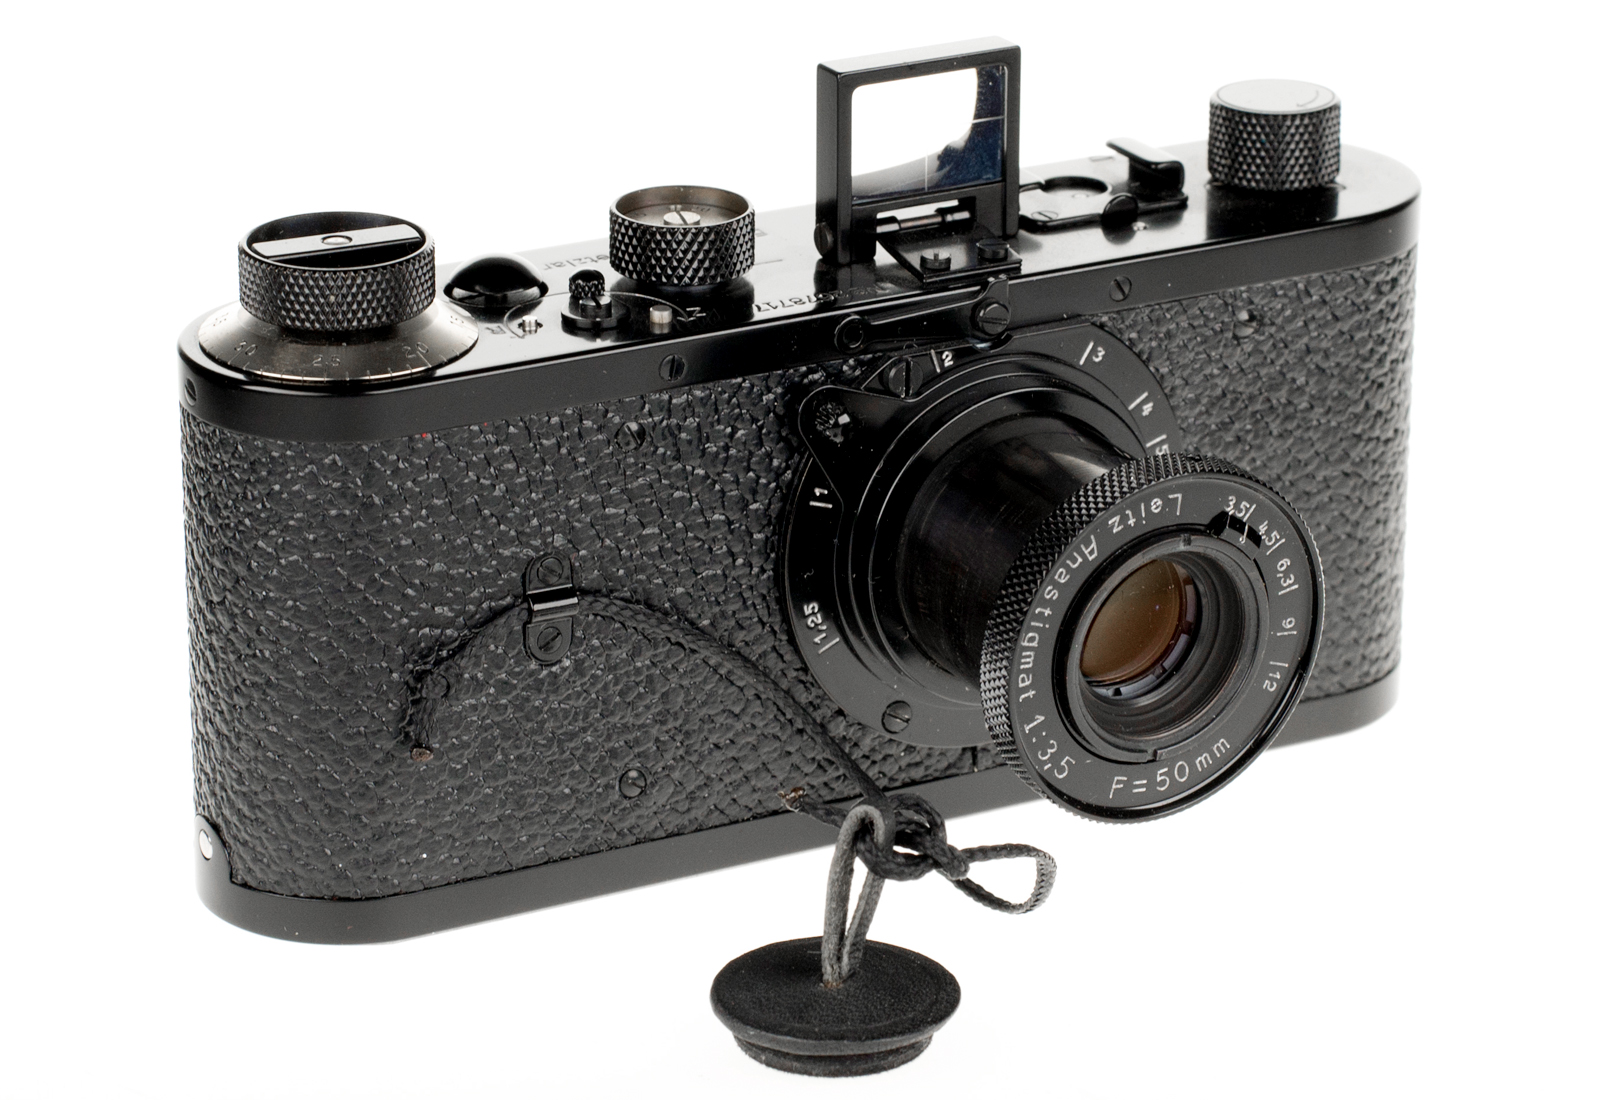 Leica "0-Serie" Replika + 3,5/50mm